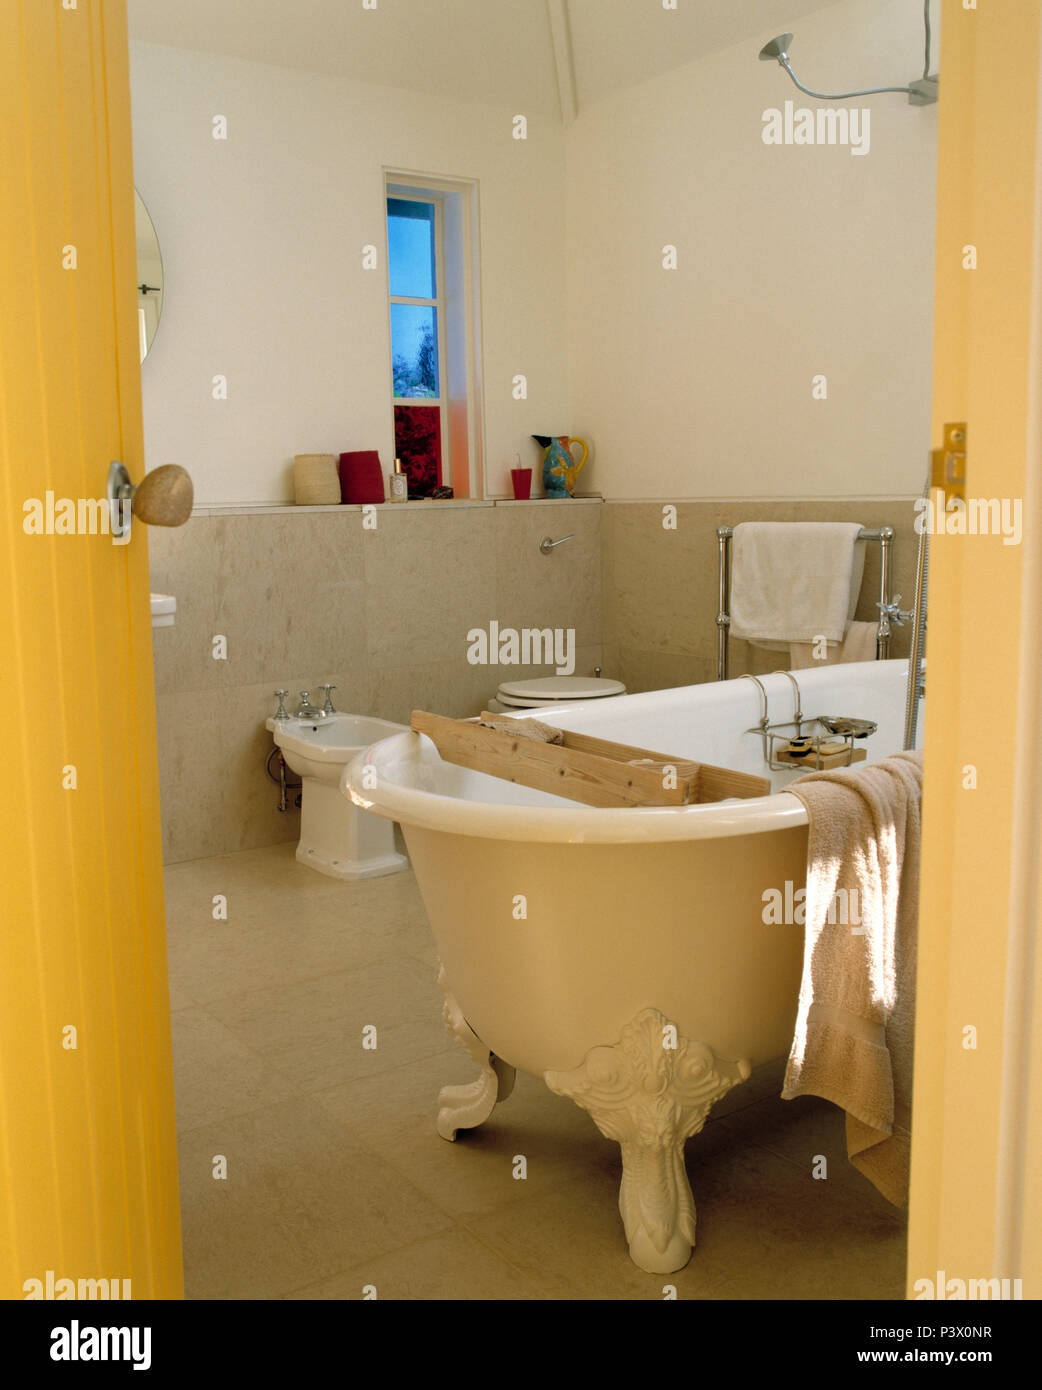 Piede artiglio freestanding bath in ampio bagno moderno Foto Stock